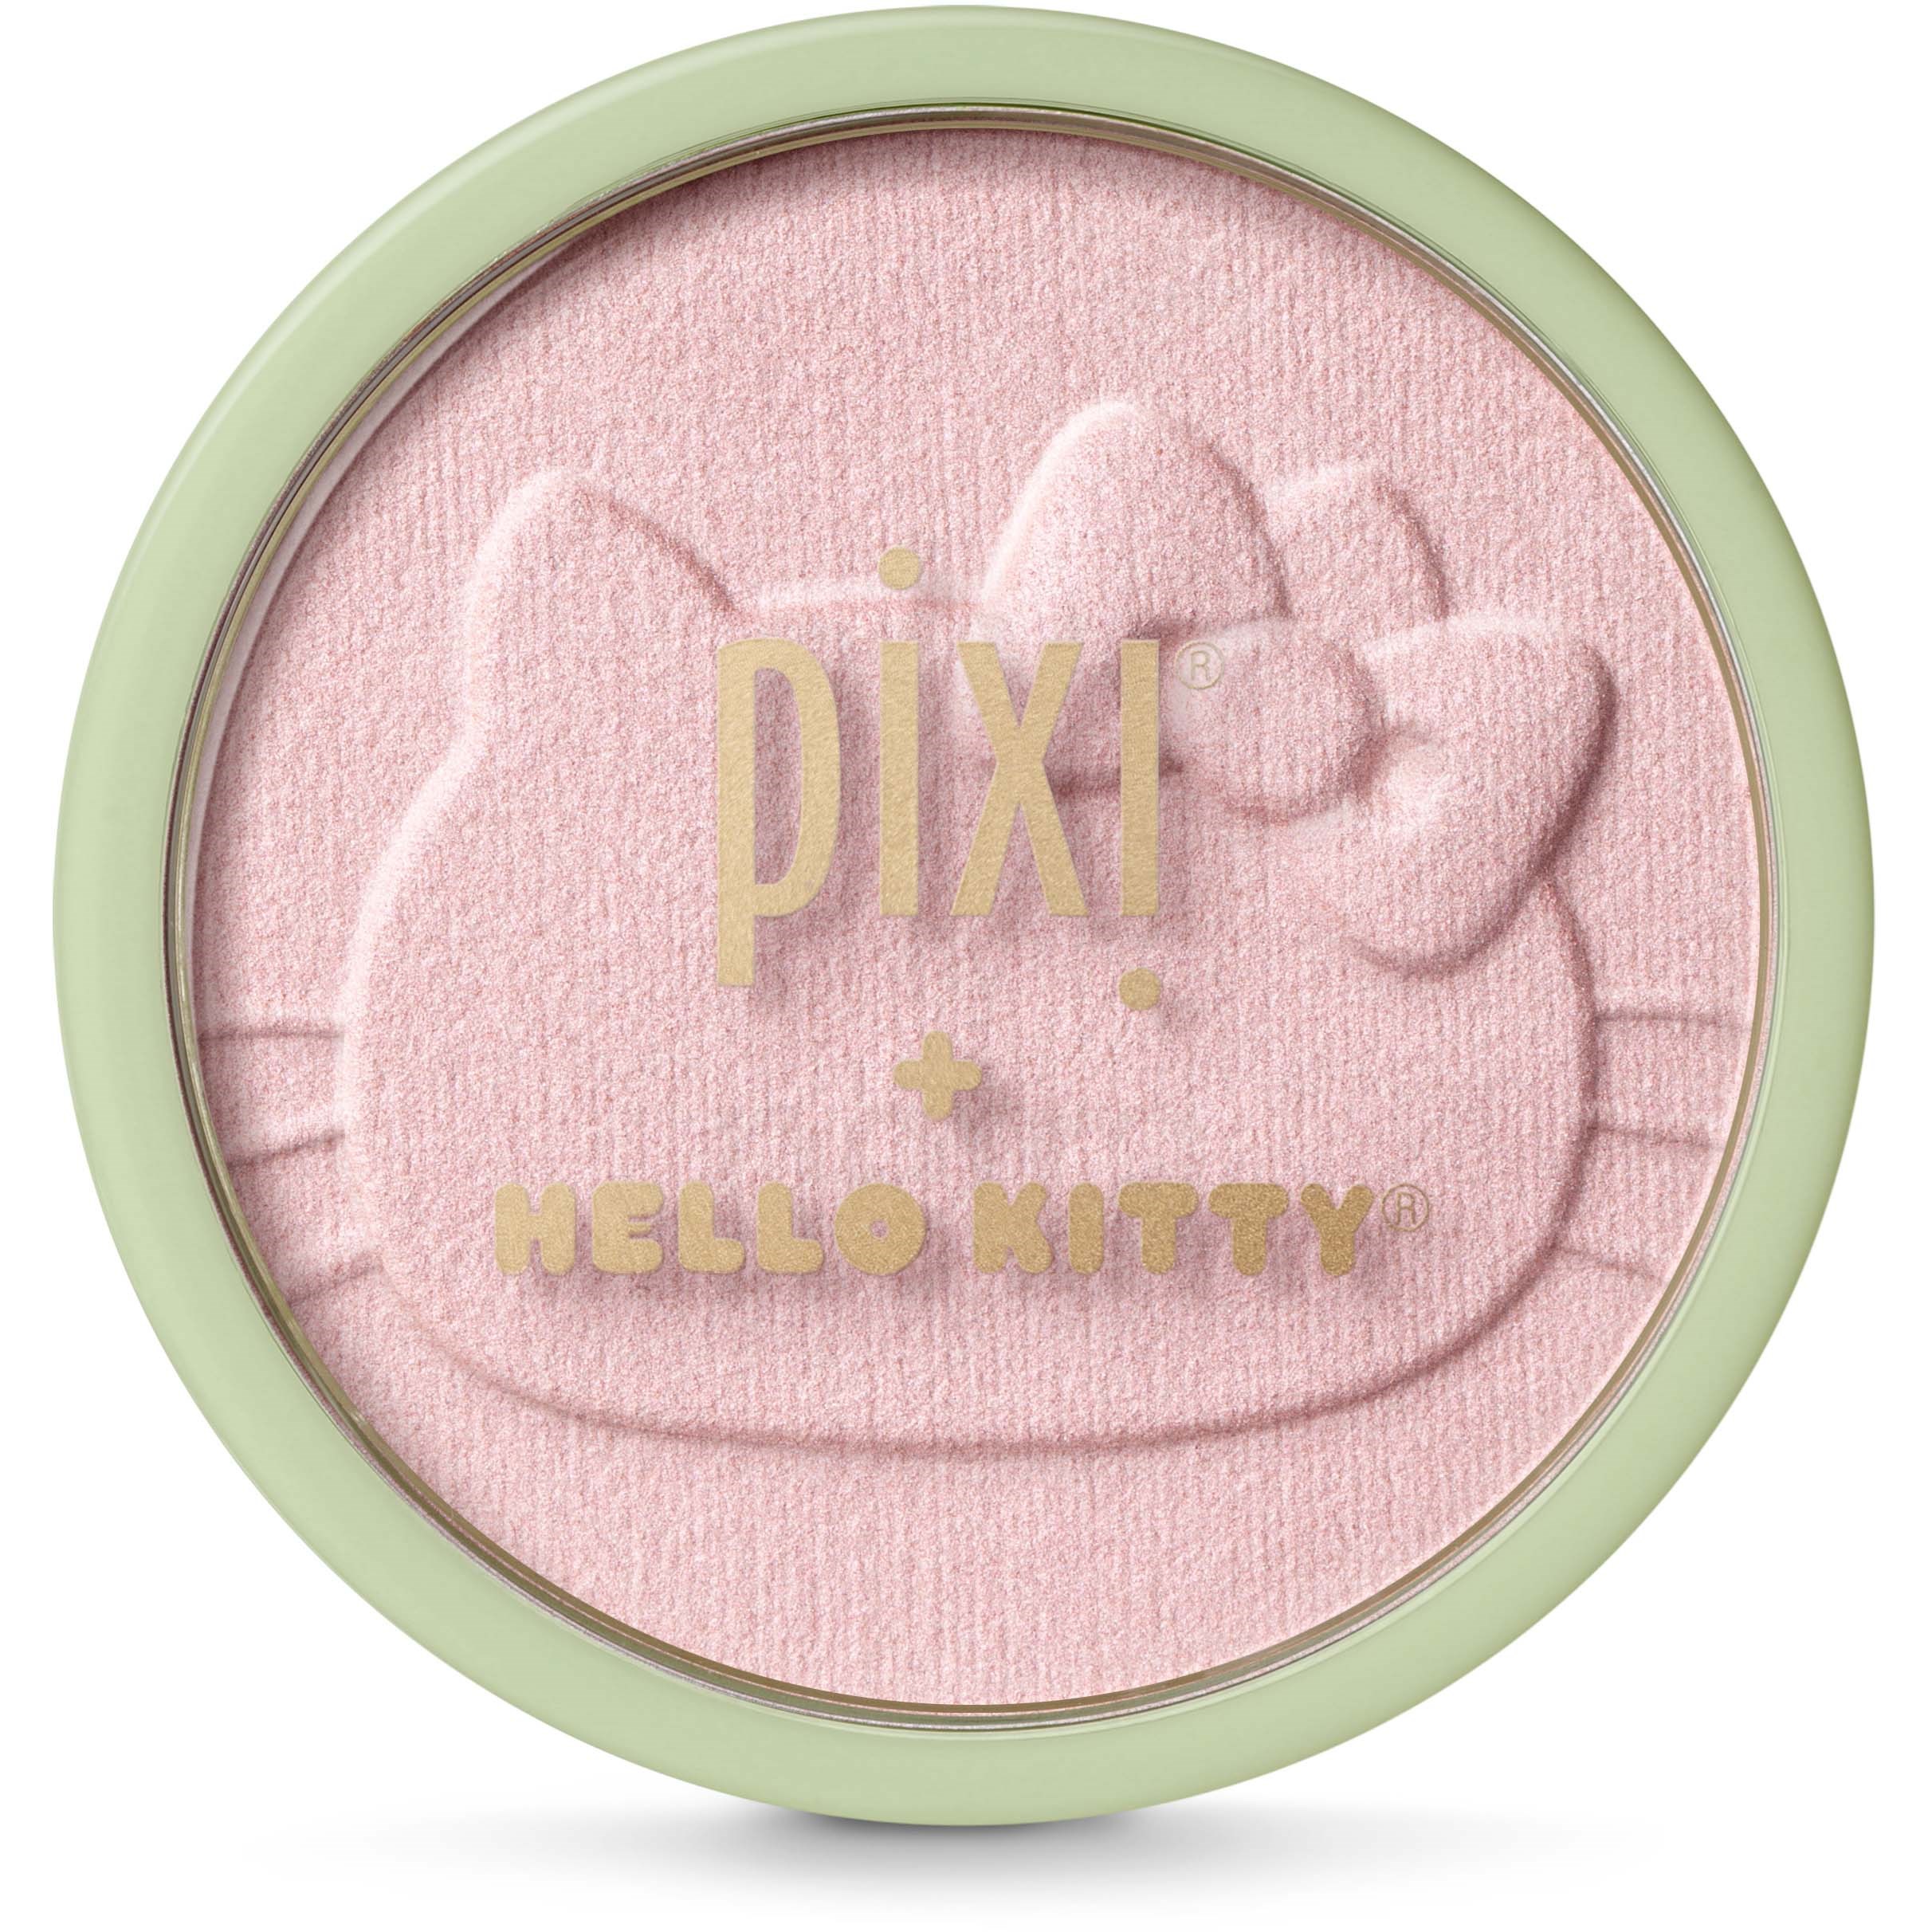 Pixi + Hello Kitty - Glow-y Powder SweetGlow